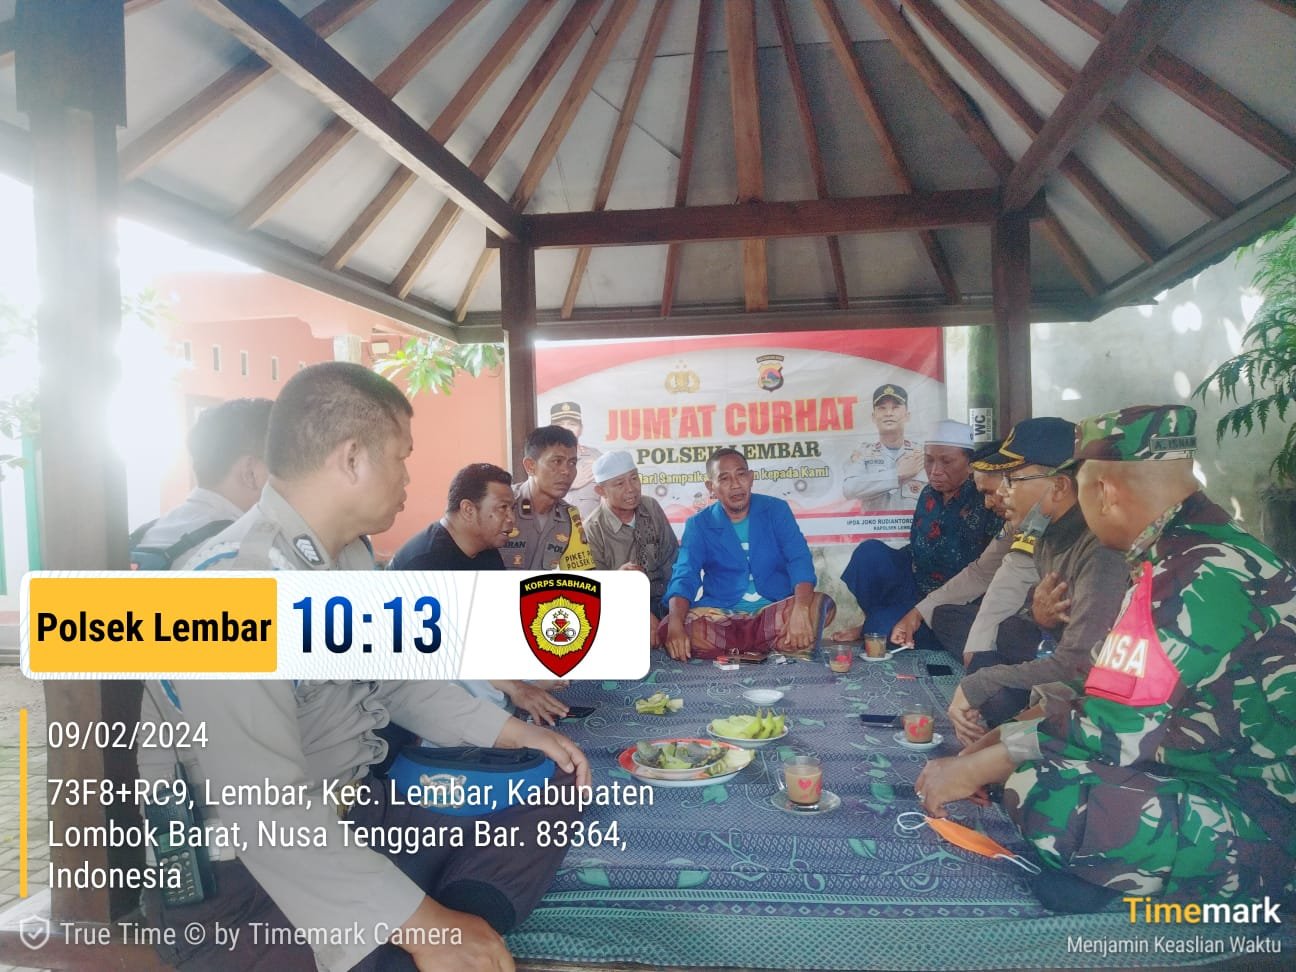 Jumat Curhat Polsek Lembar Menjaga Kamtibmas dan Menyambut Pemilu 2024 Aman di Lombok Barat